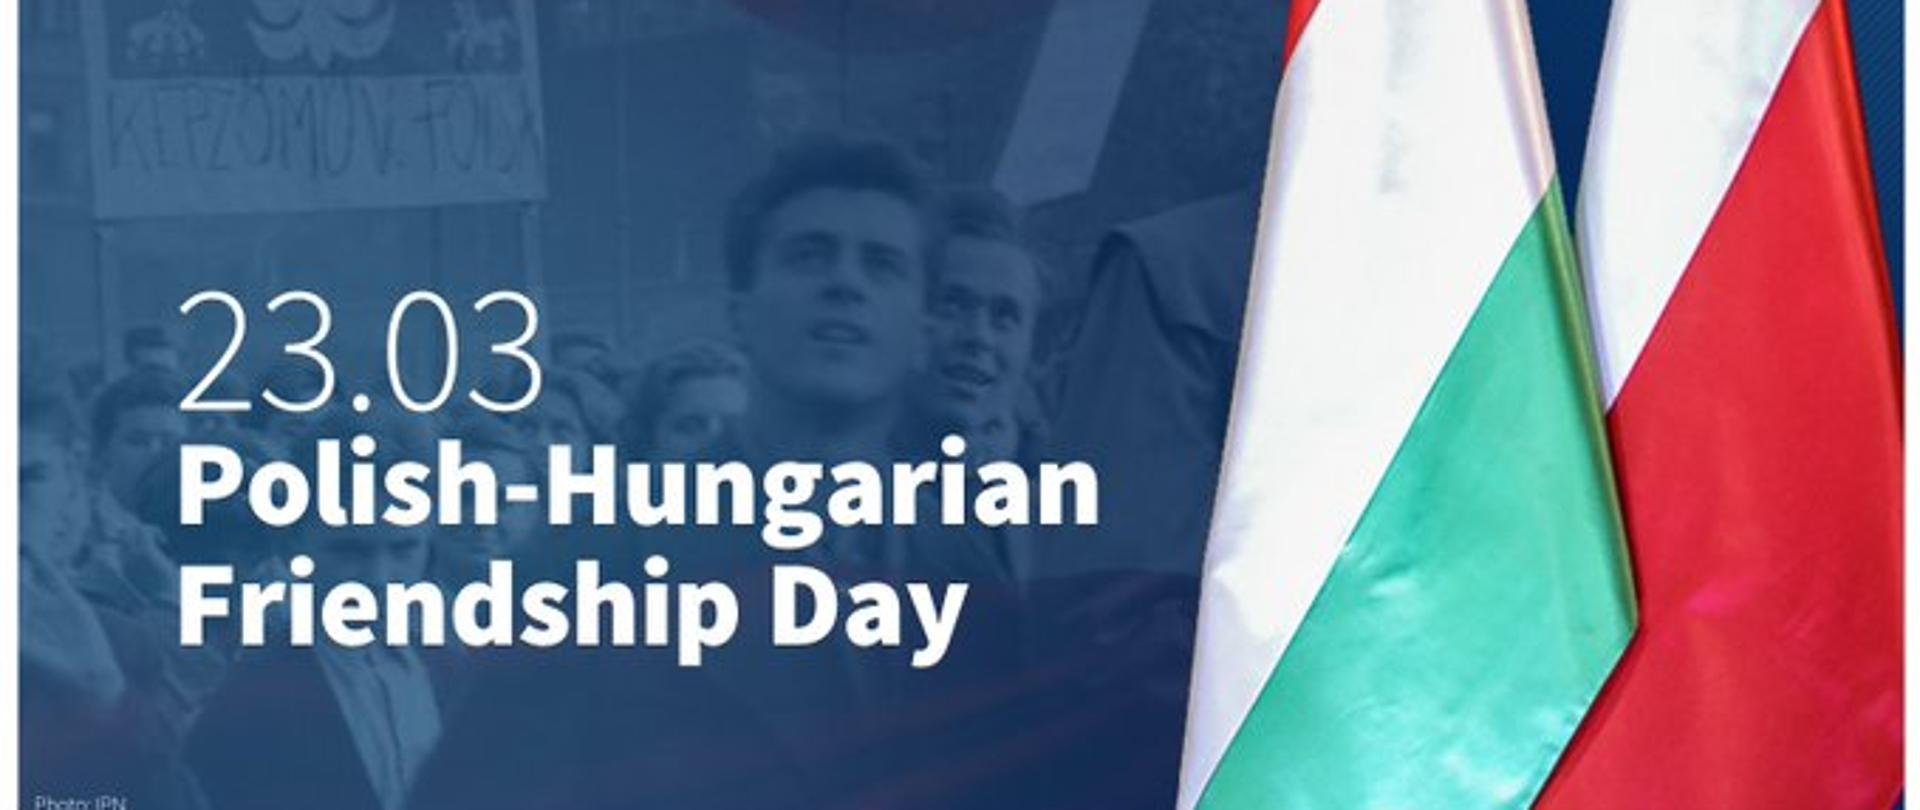 Polsko - Węgierski Dzień Przyjaźni